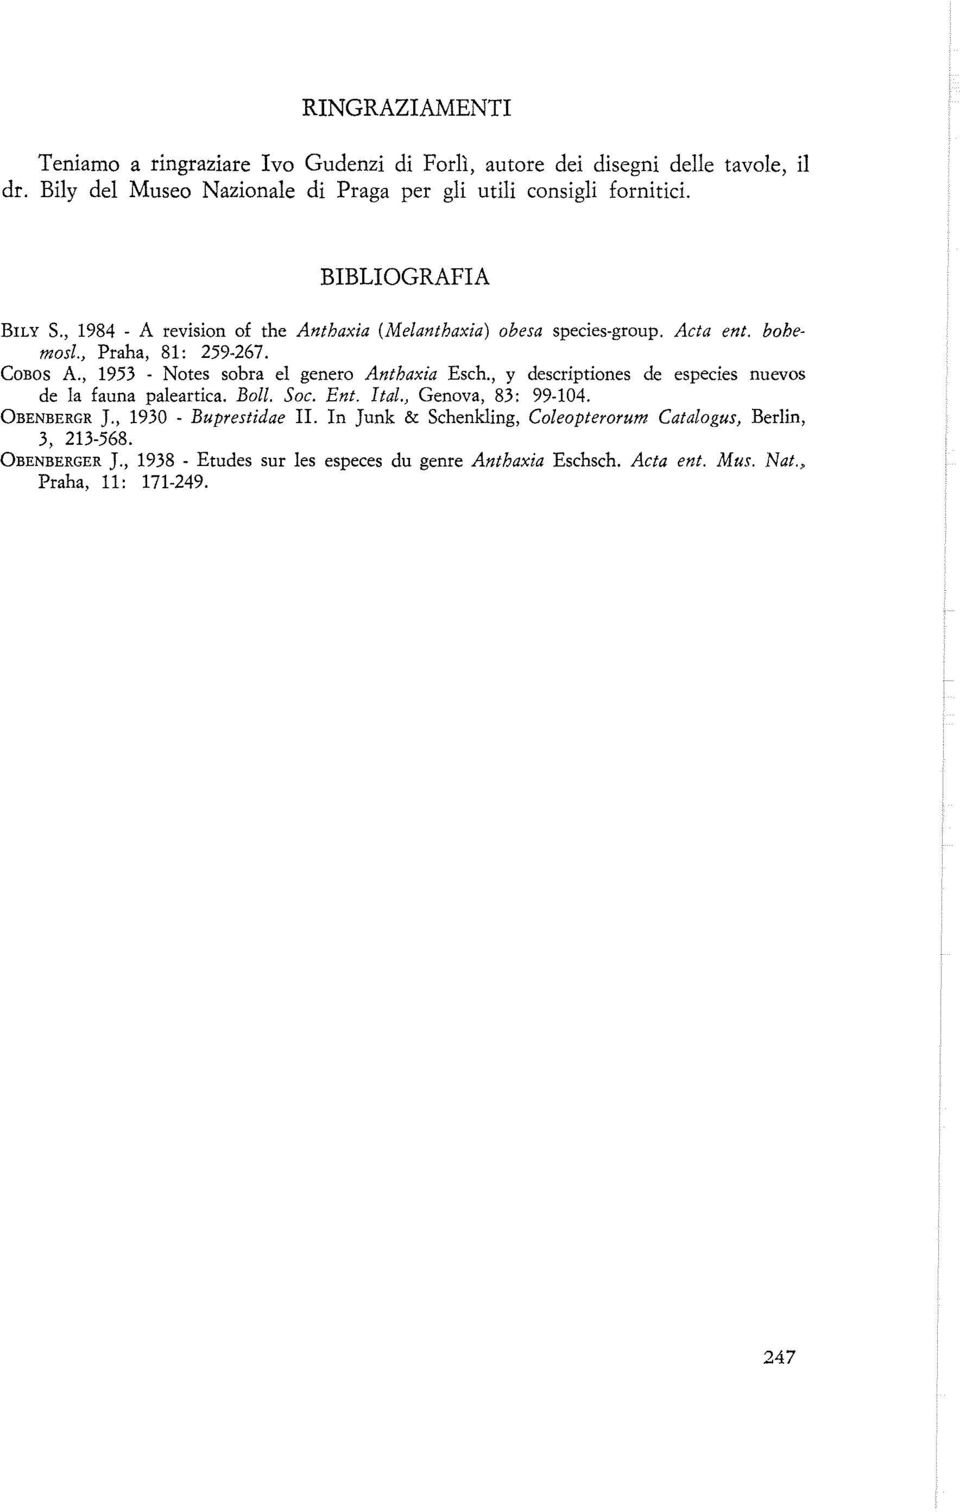 , 1953 - Notes sobra el genero Anthaxia Esch., y descriptiones de especies nuevos de la fauna paleartica. Boll. Soc. Ent. Ital., Genova, 83: 99-104. OBENBERGR J.